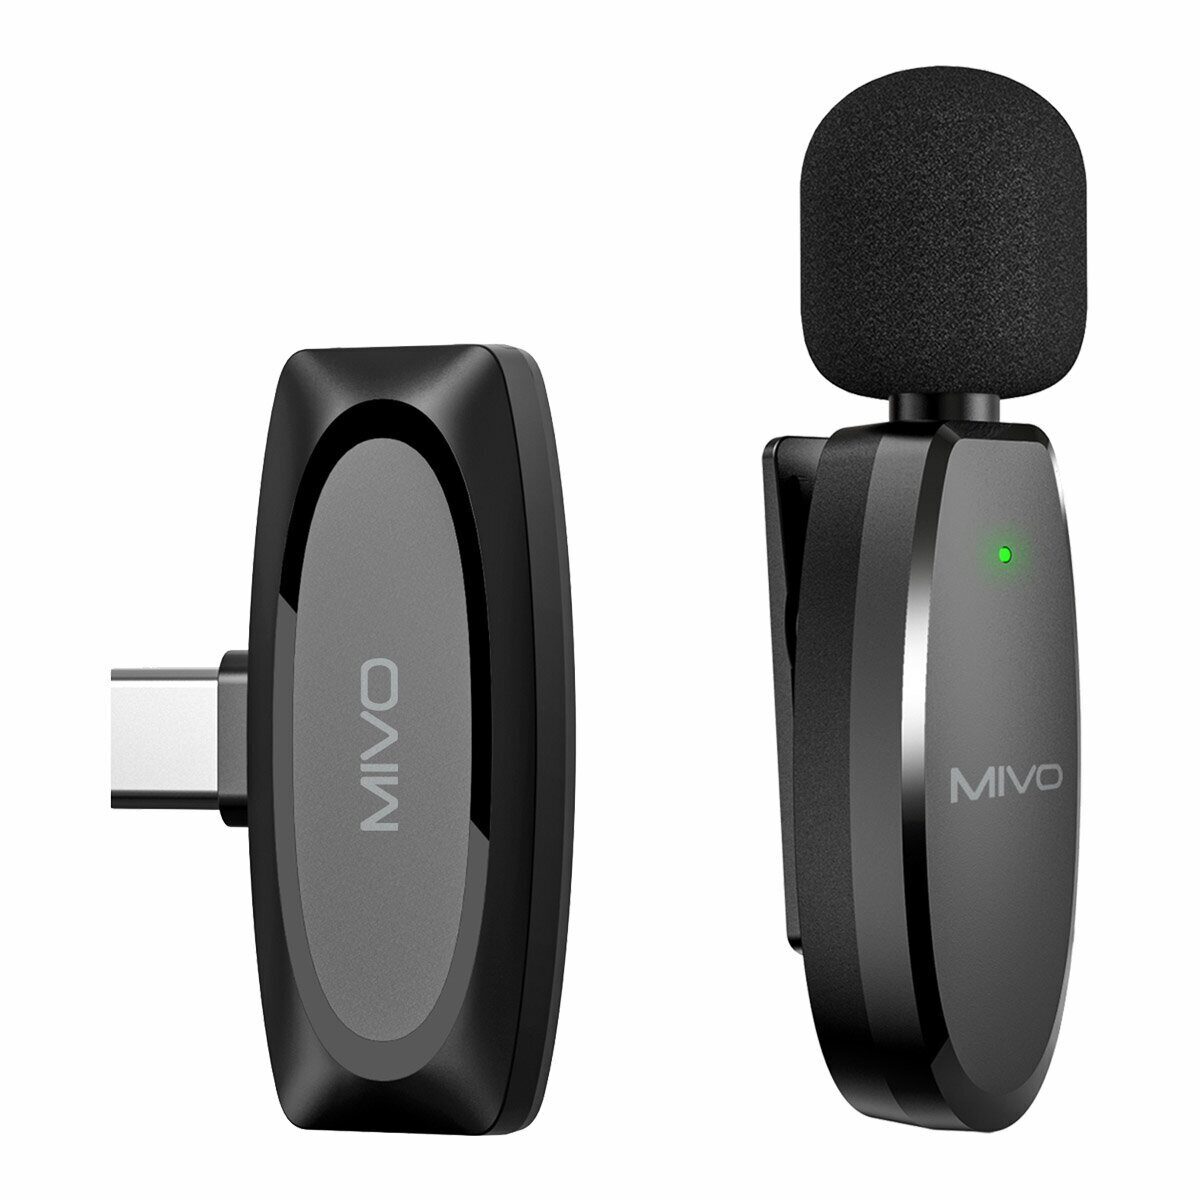 Беспроводной Bluetooth петличный микрофон Mivo MK-610T (Type-C) беспроводной bluetooth петличный микрофон mivo mk 621l lightning